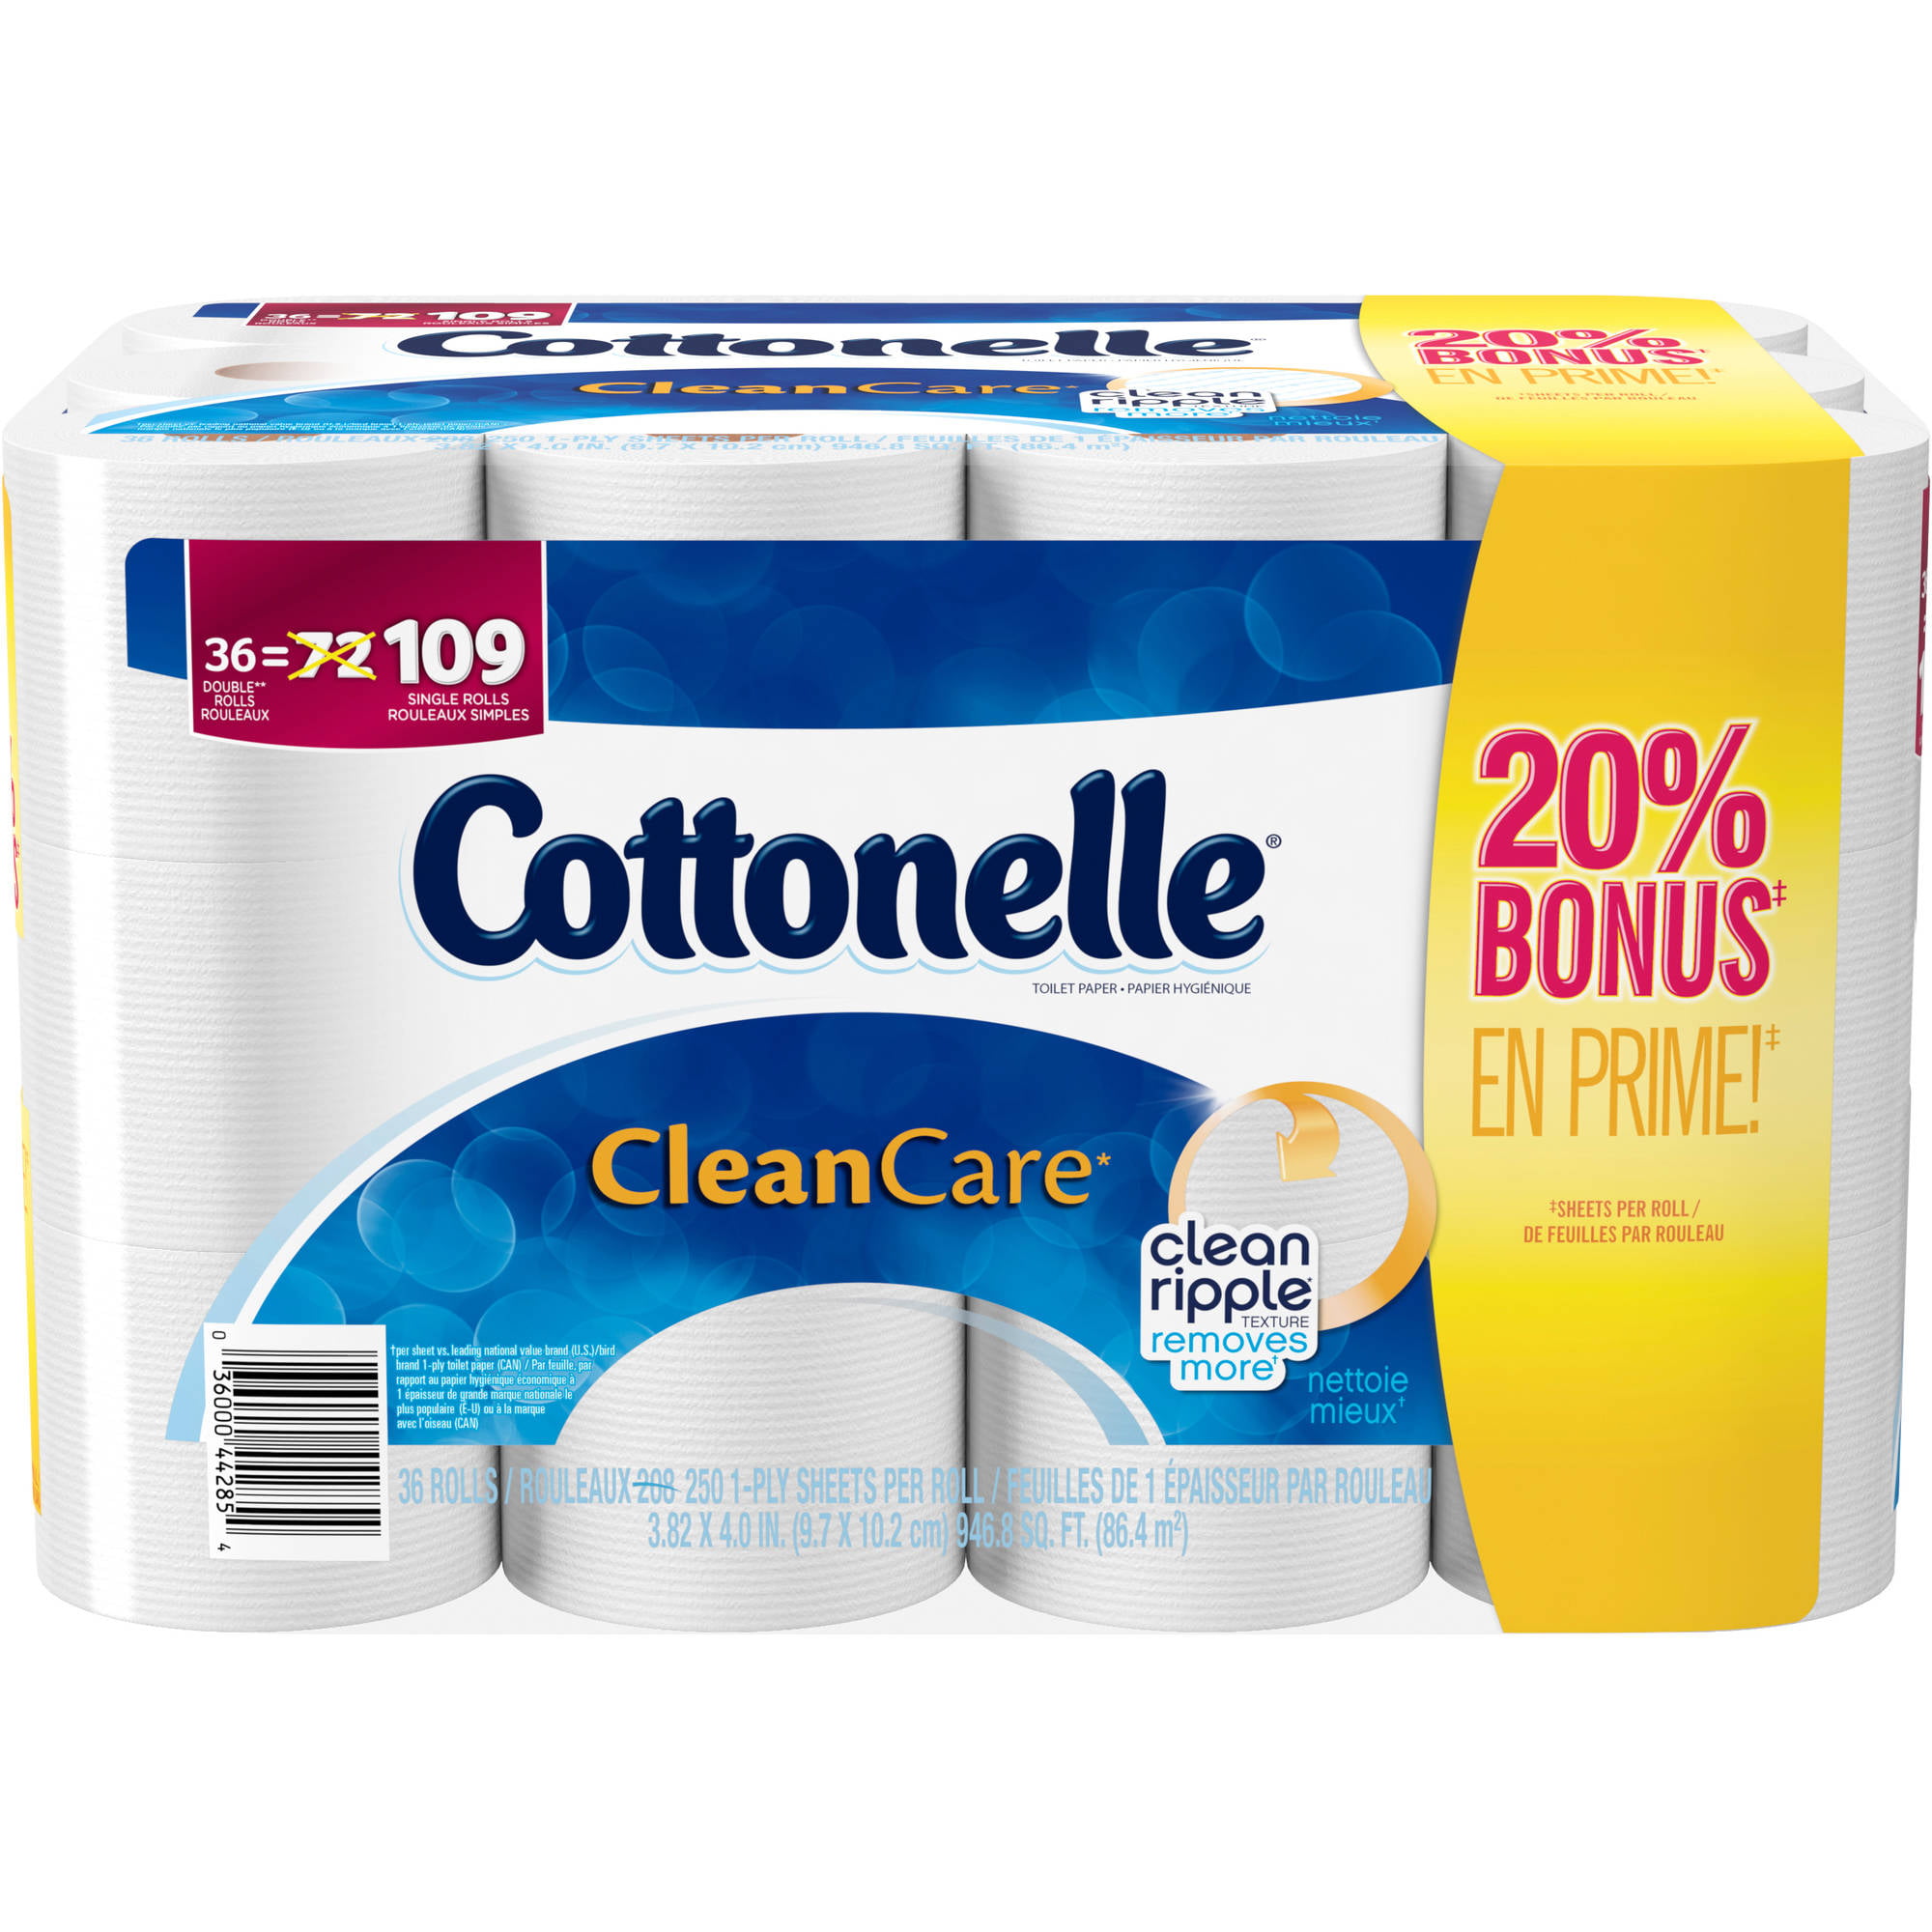 Cottonelle CleanCare Double Roll Toilet Paper, 36 rolls - Walmart.com